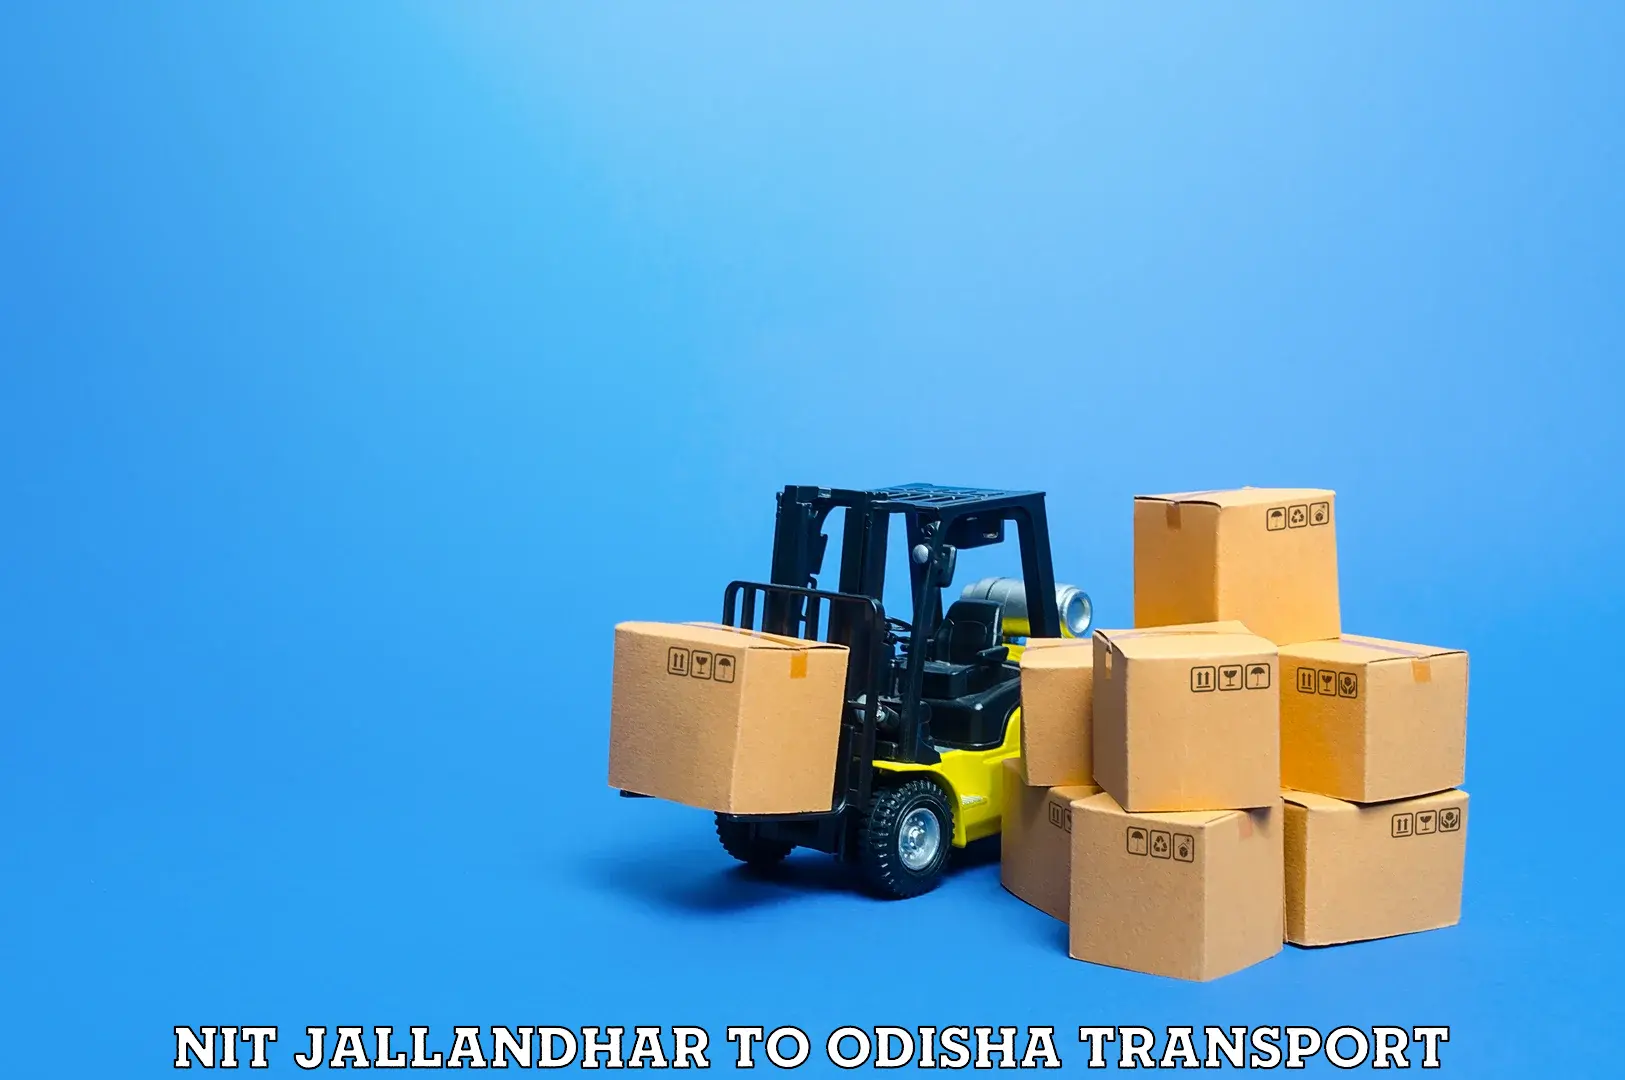 Bike shipping service NIT Jallandhar to Paralakhemundi